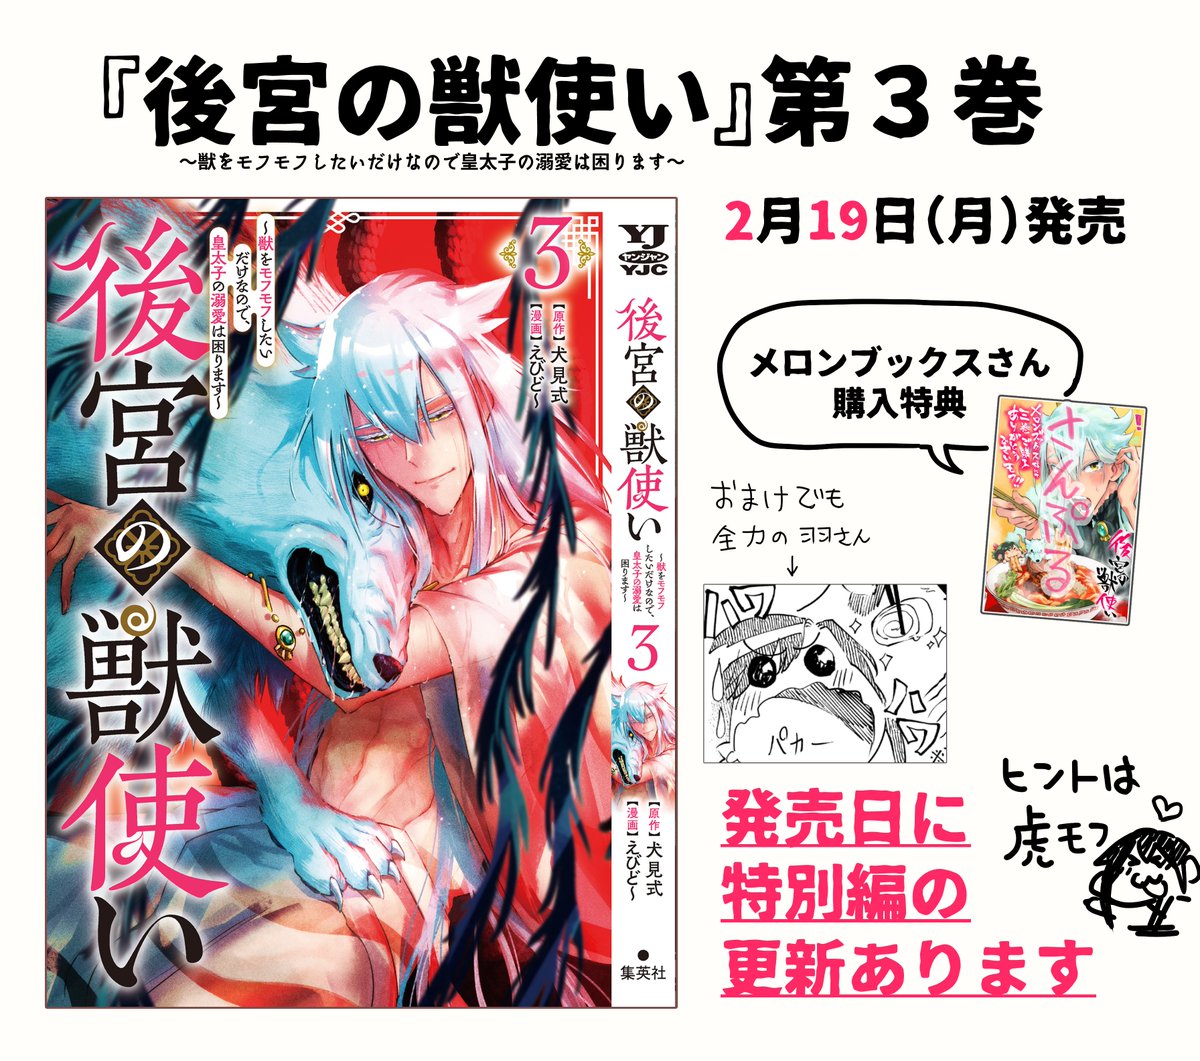 『#後宮の獣使い 』 2月19日(月)3巻が発売です! ギラギラ赤がかわいい表紙🍎 おまけは今回もモリモリです😋  発売と一緒にニコニコ漫画で特別編が掲載されます。 ちょっと切なげであったかいお話…🐯  ニコニコ漫画 https://seiga.nicovideo.jp/comic/63081?track=verticalwatch_cminfo3